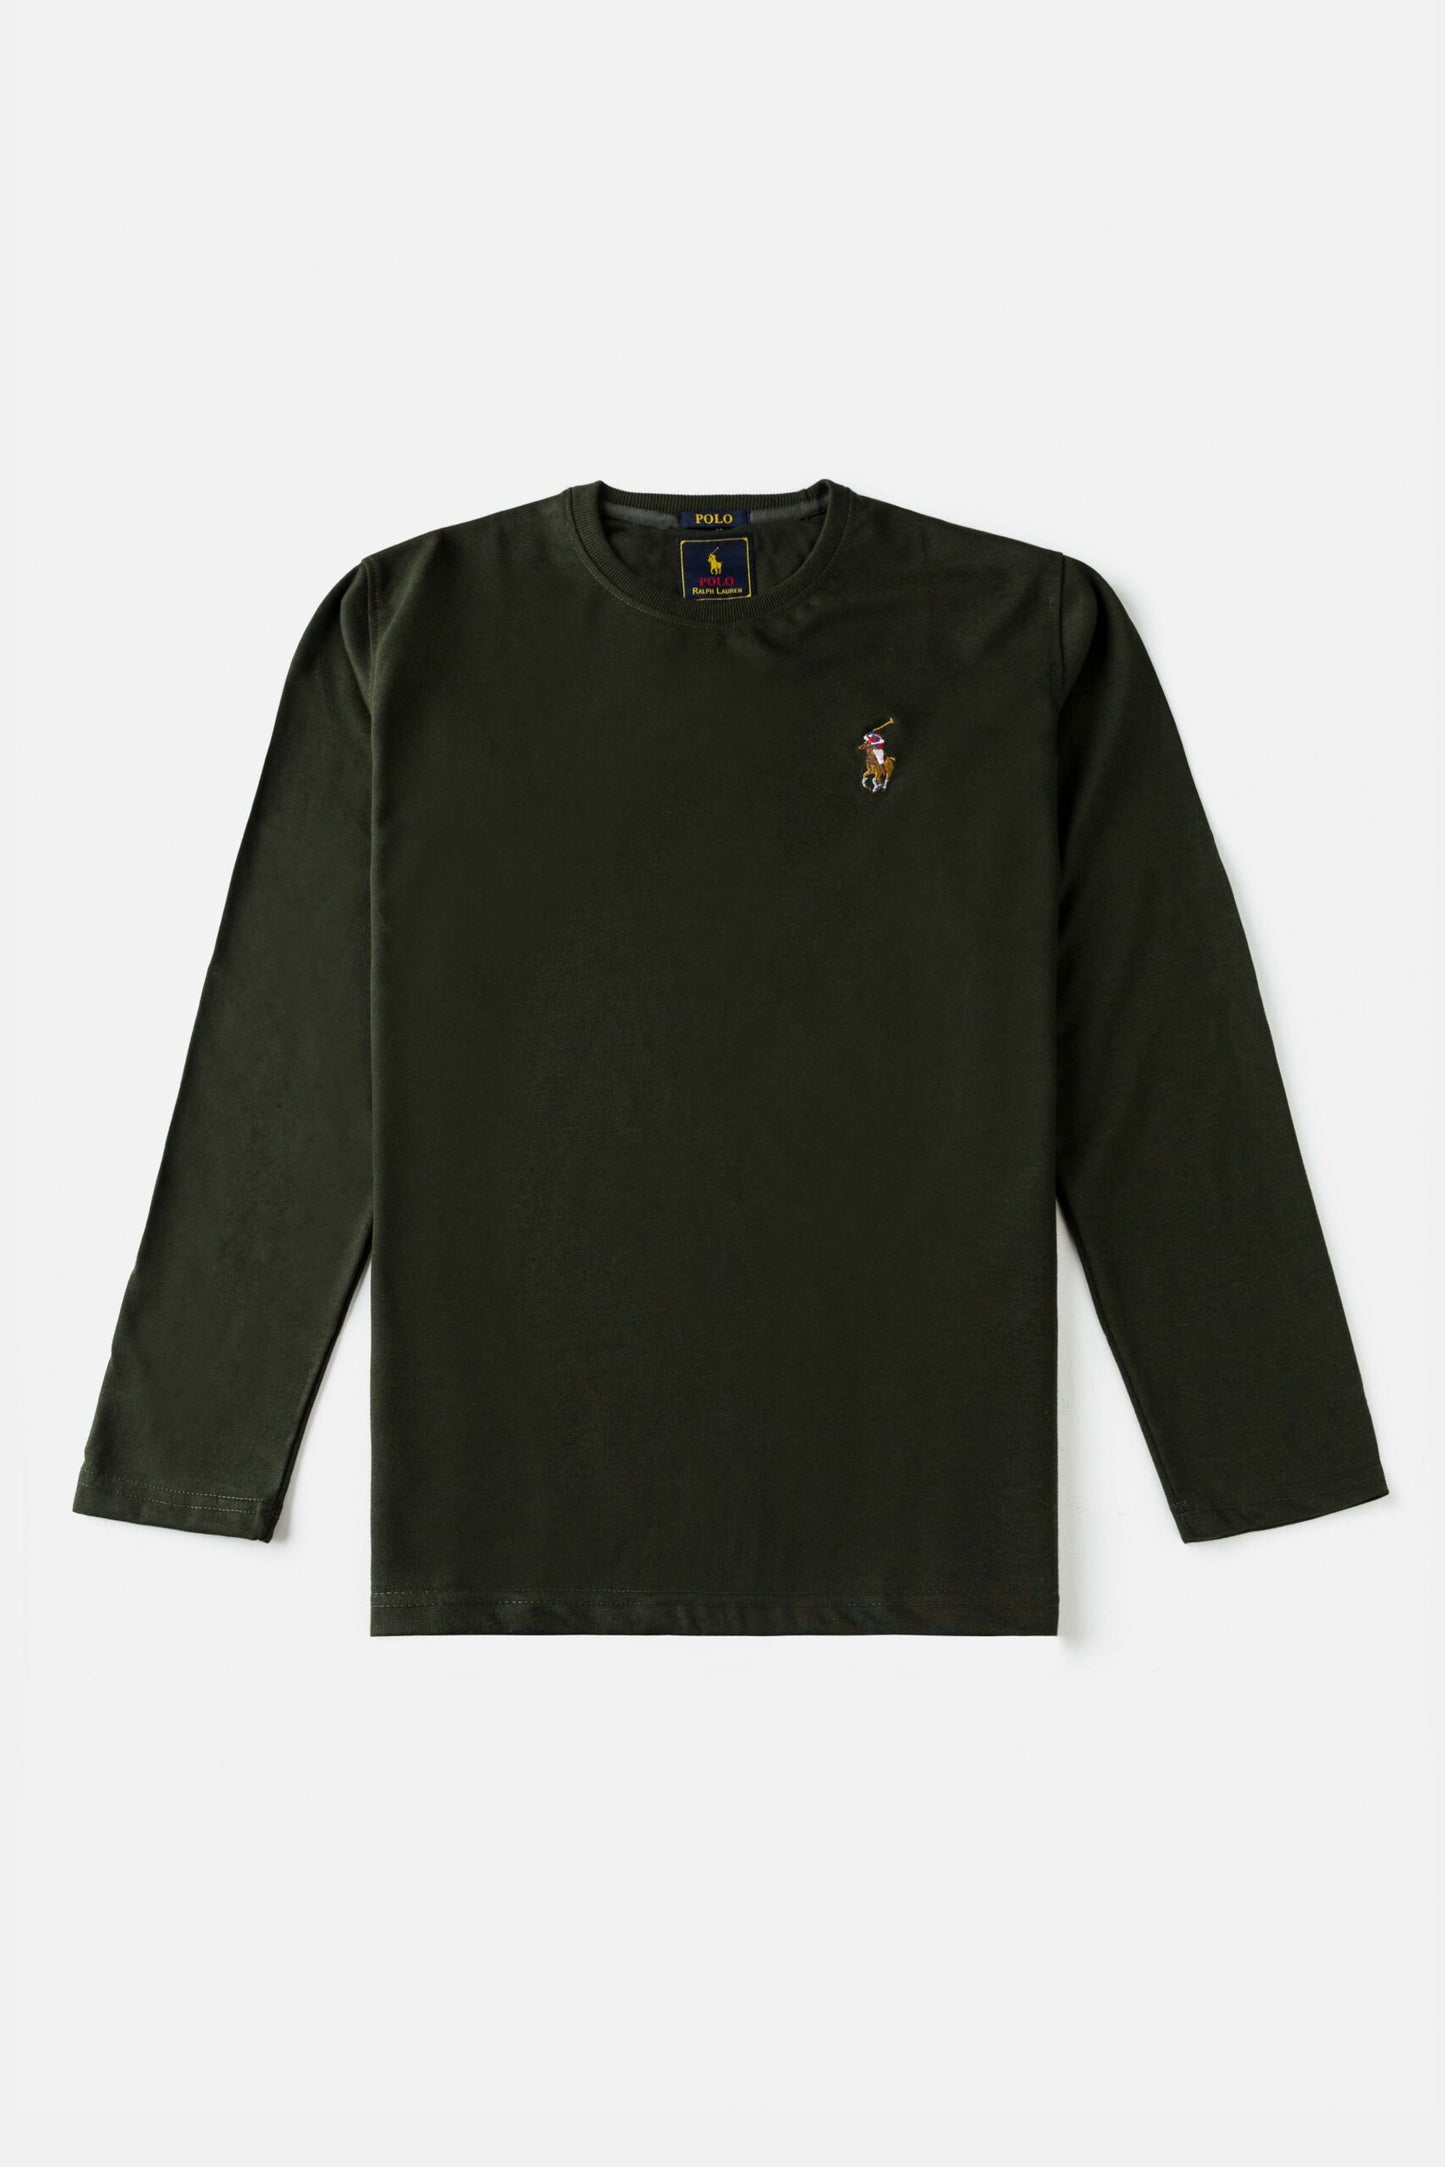 RL Premium Multi Pony Full T Shirt – Forest Green